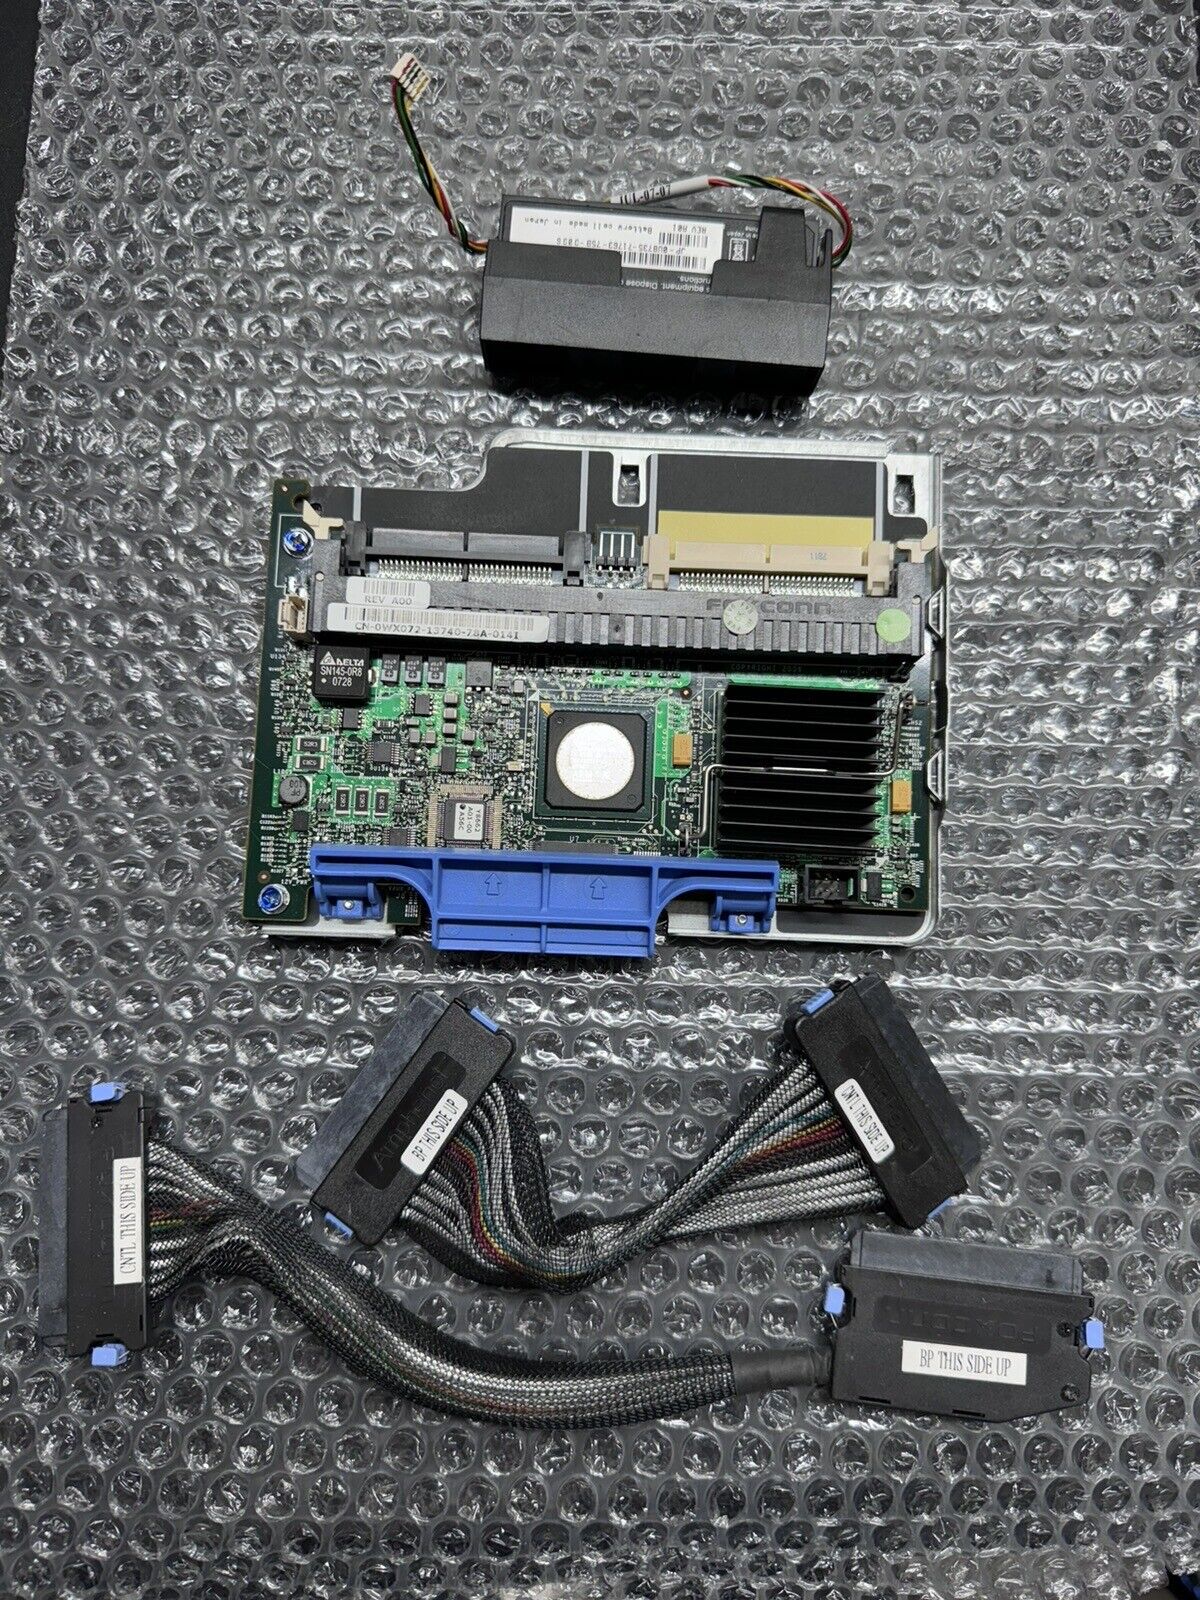 Dell 0WX072 0tu005 PERC 5i SAS Raid Controller PCIe x8 Card 66-2